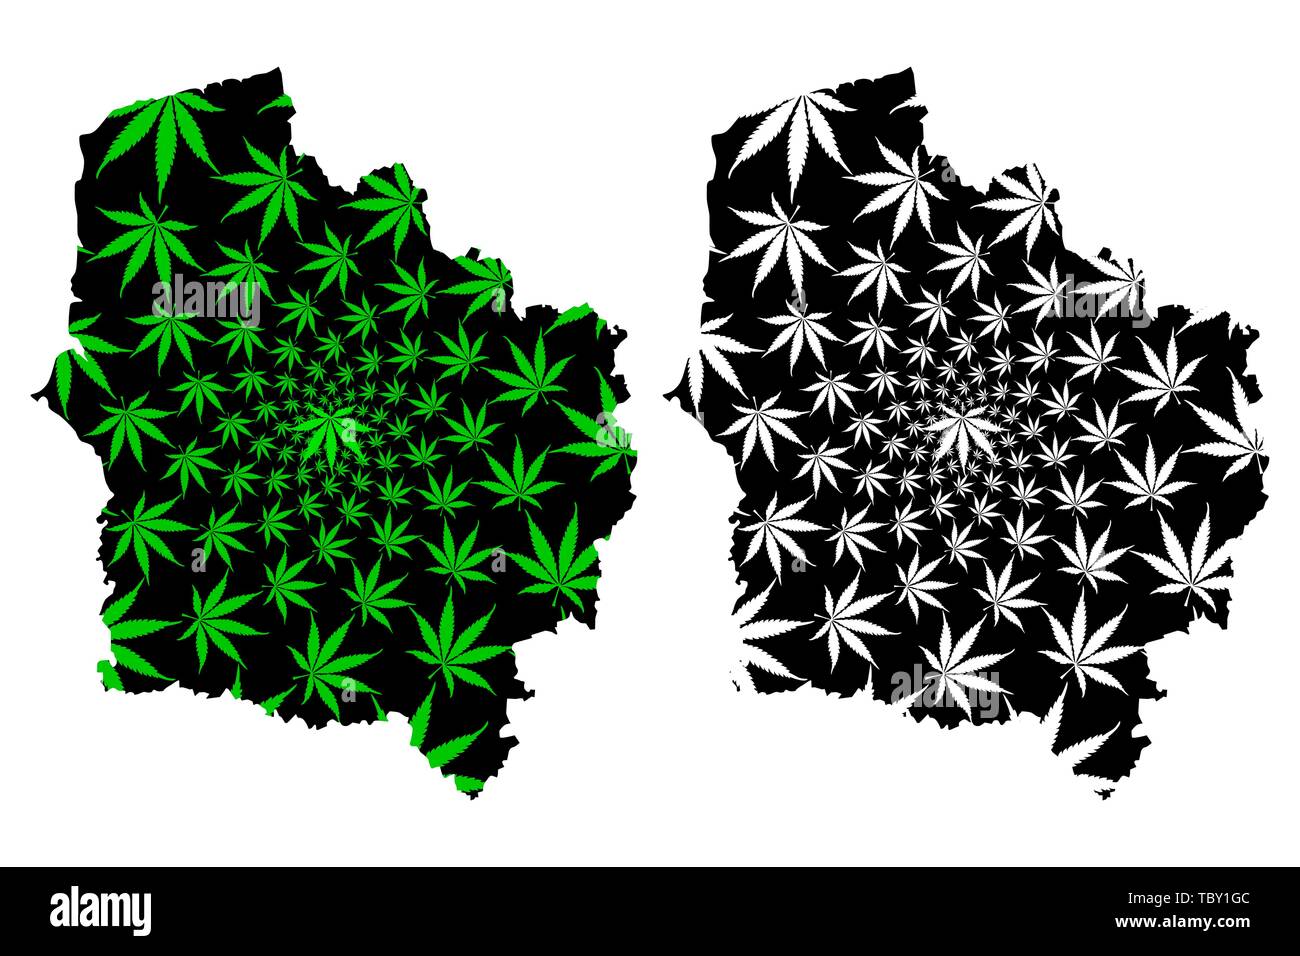 Hauts-de-France (France, région administrative) la carte est conçue de feuilles de cannabis vert et noir, le Nord-Pas-de-Calais et Picardie carte de marijuana (m Illustration de Vecteur